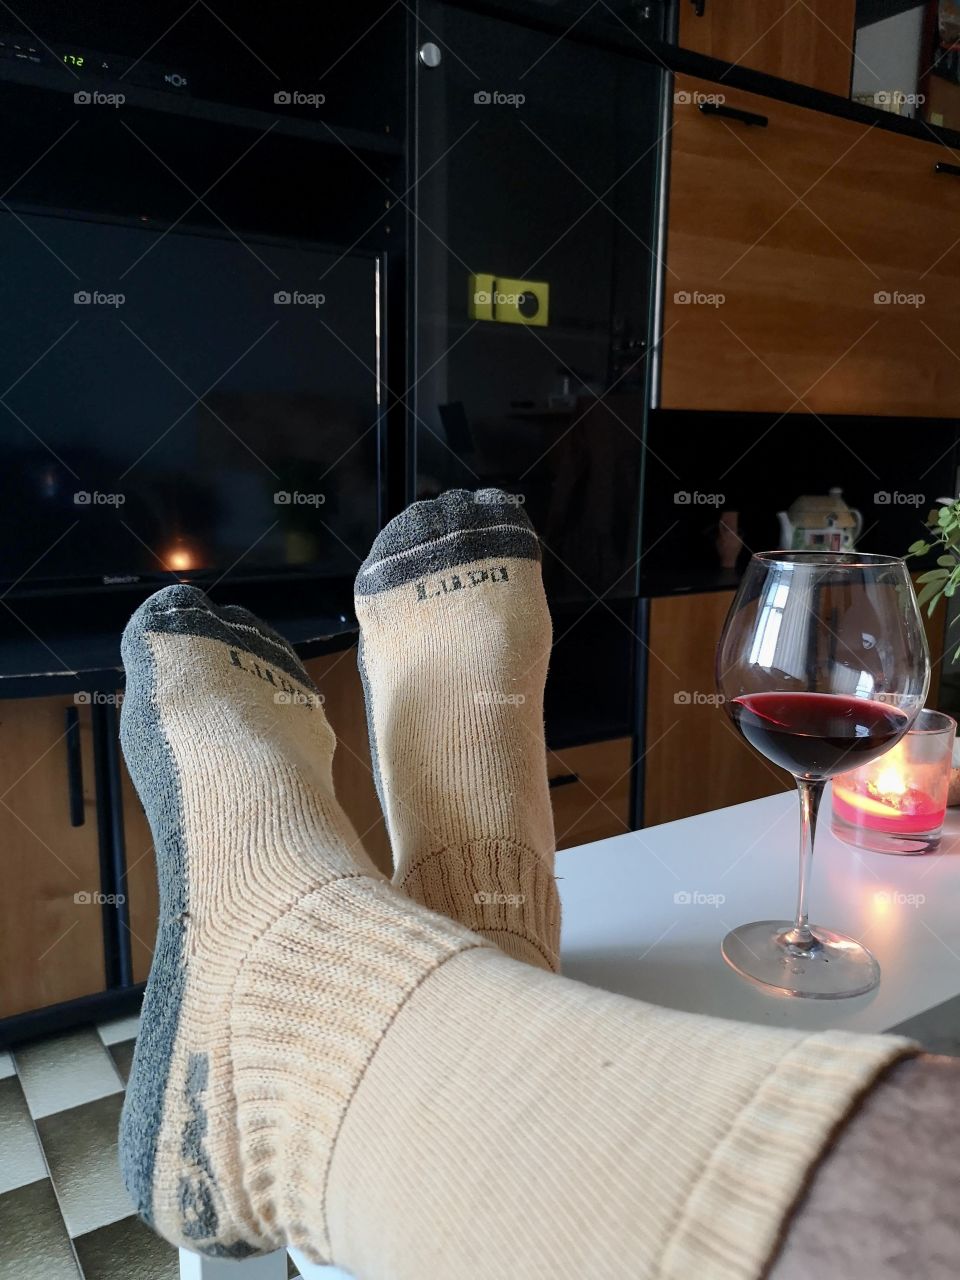 Drinking wine with socks on autumn night